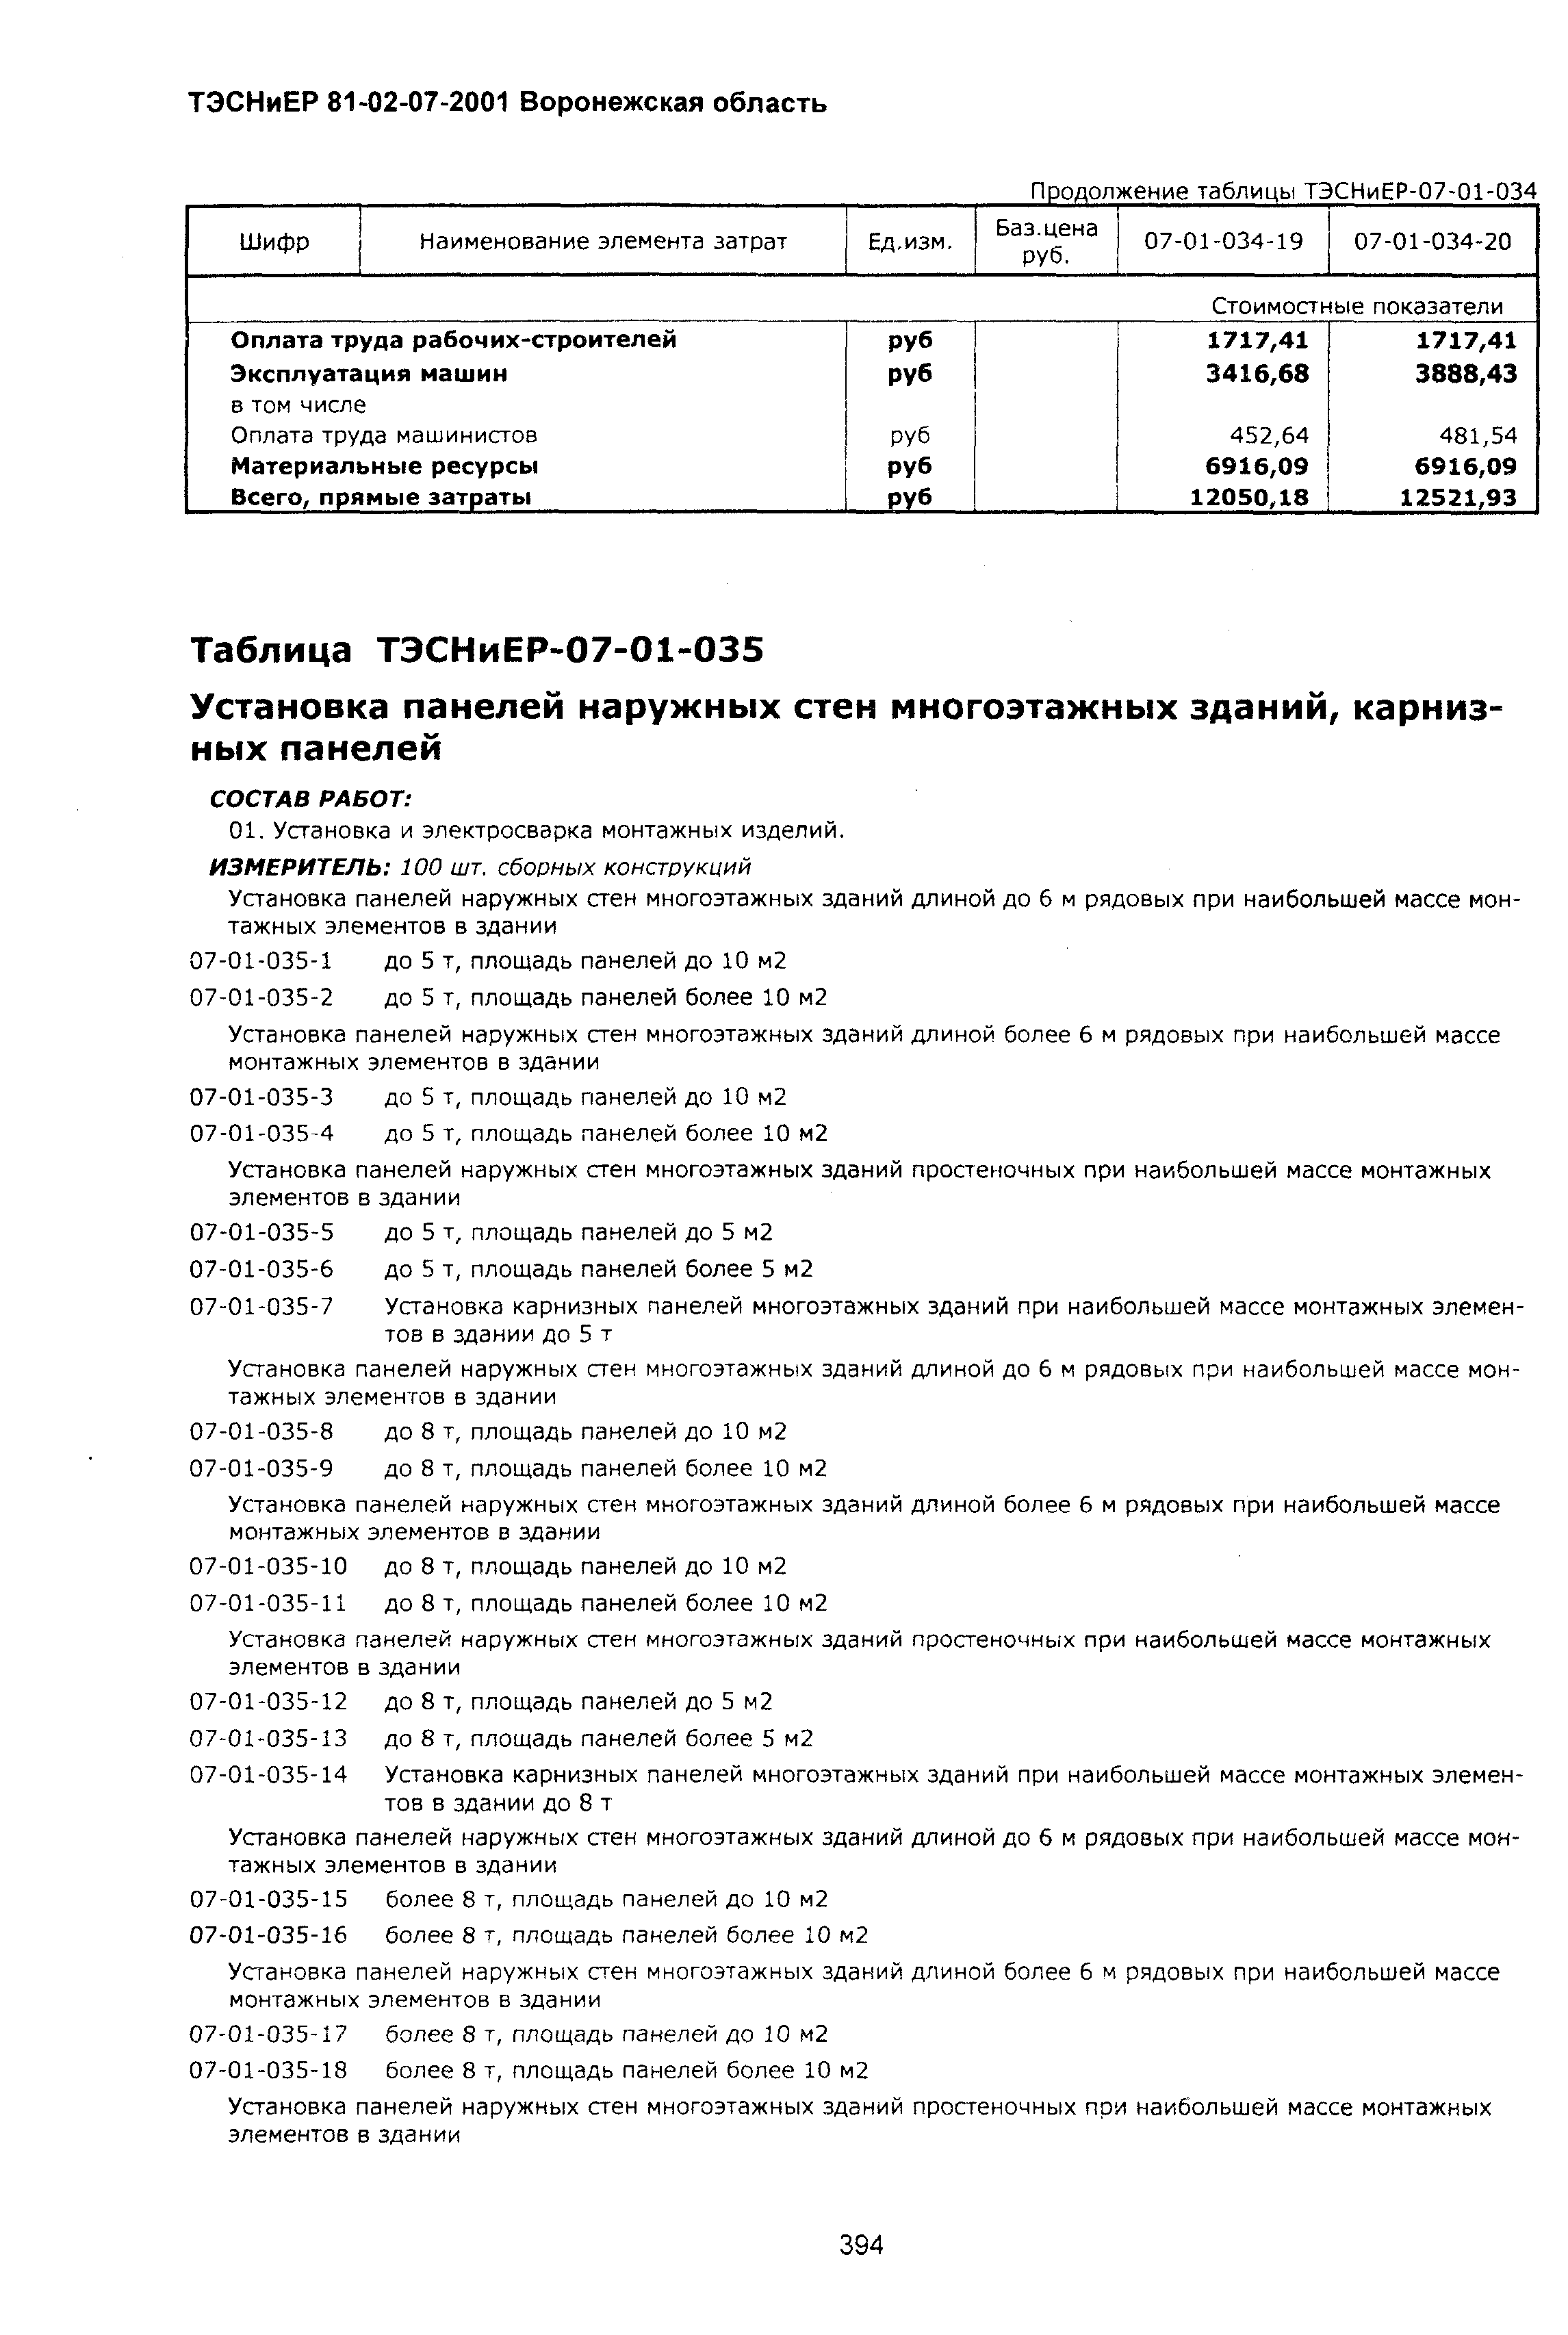 ТЭСНиЕР Воронежской области 81-02-07-2001